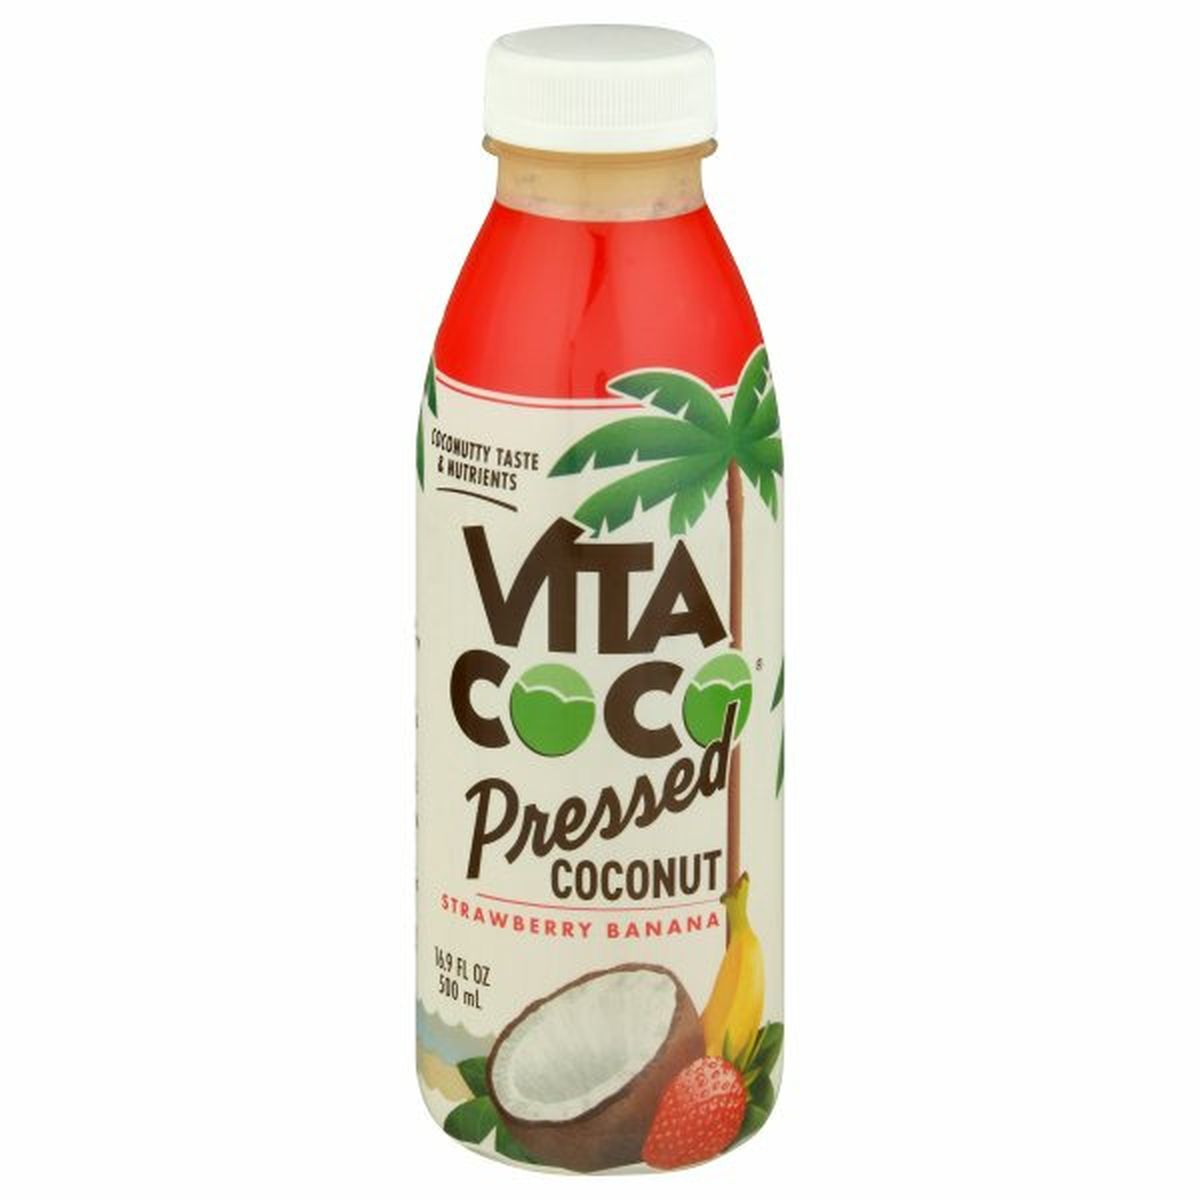 Calories in Vita Coco Pressed Coconut, Strawberry Banana